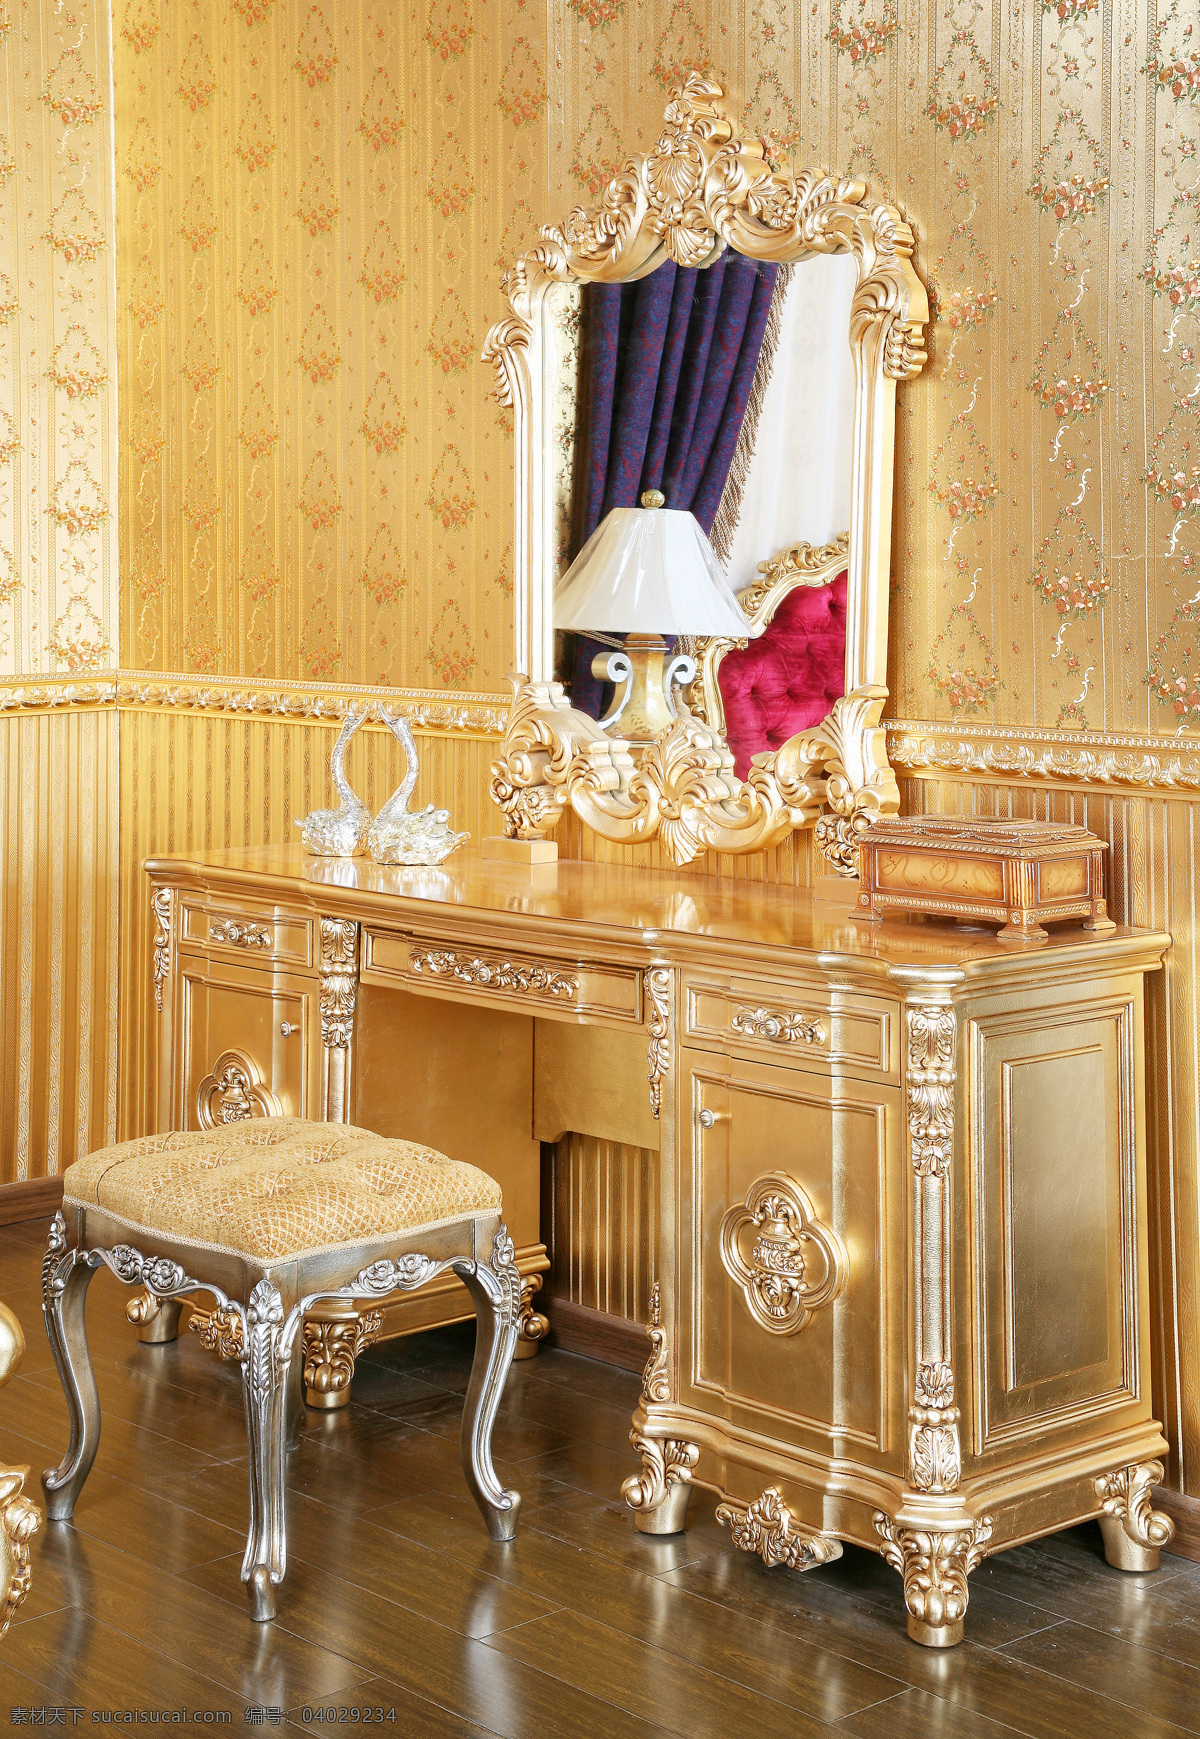 古典 家居生活 家具 欧式 摄影图库 生活百科 椅子 艺术 装修 桌子 家居装饰素材